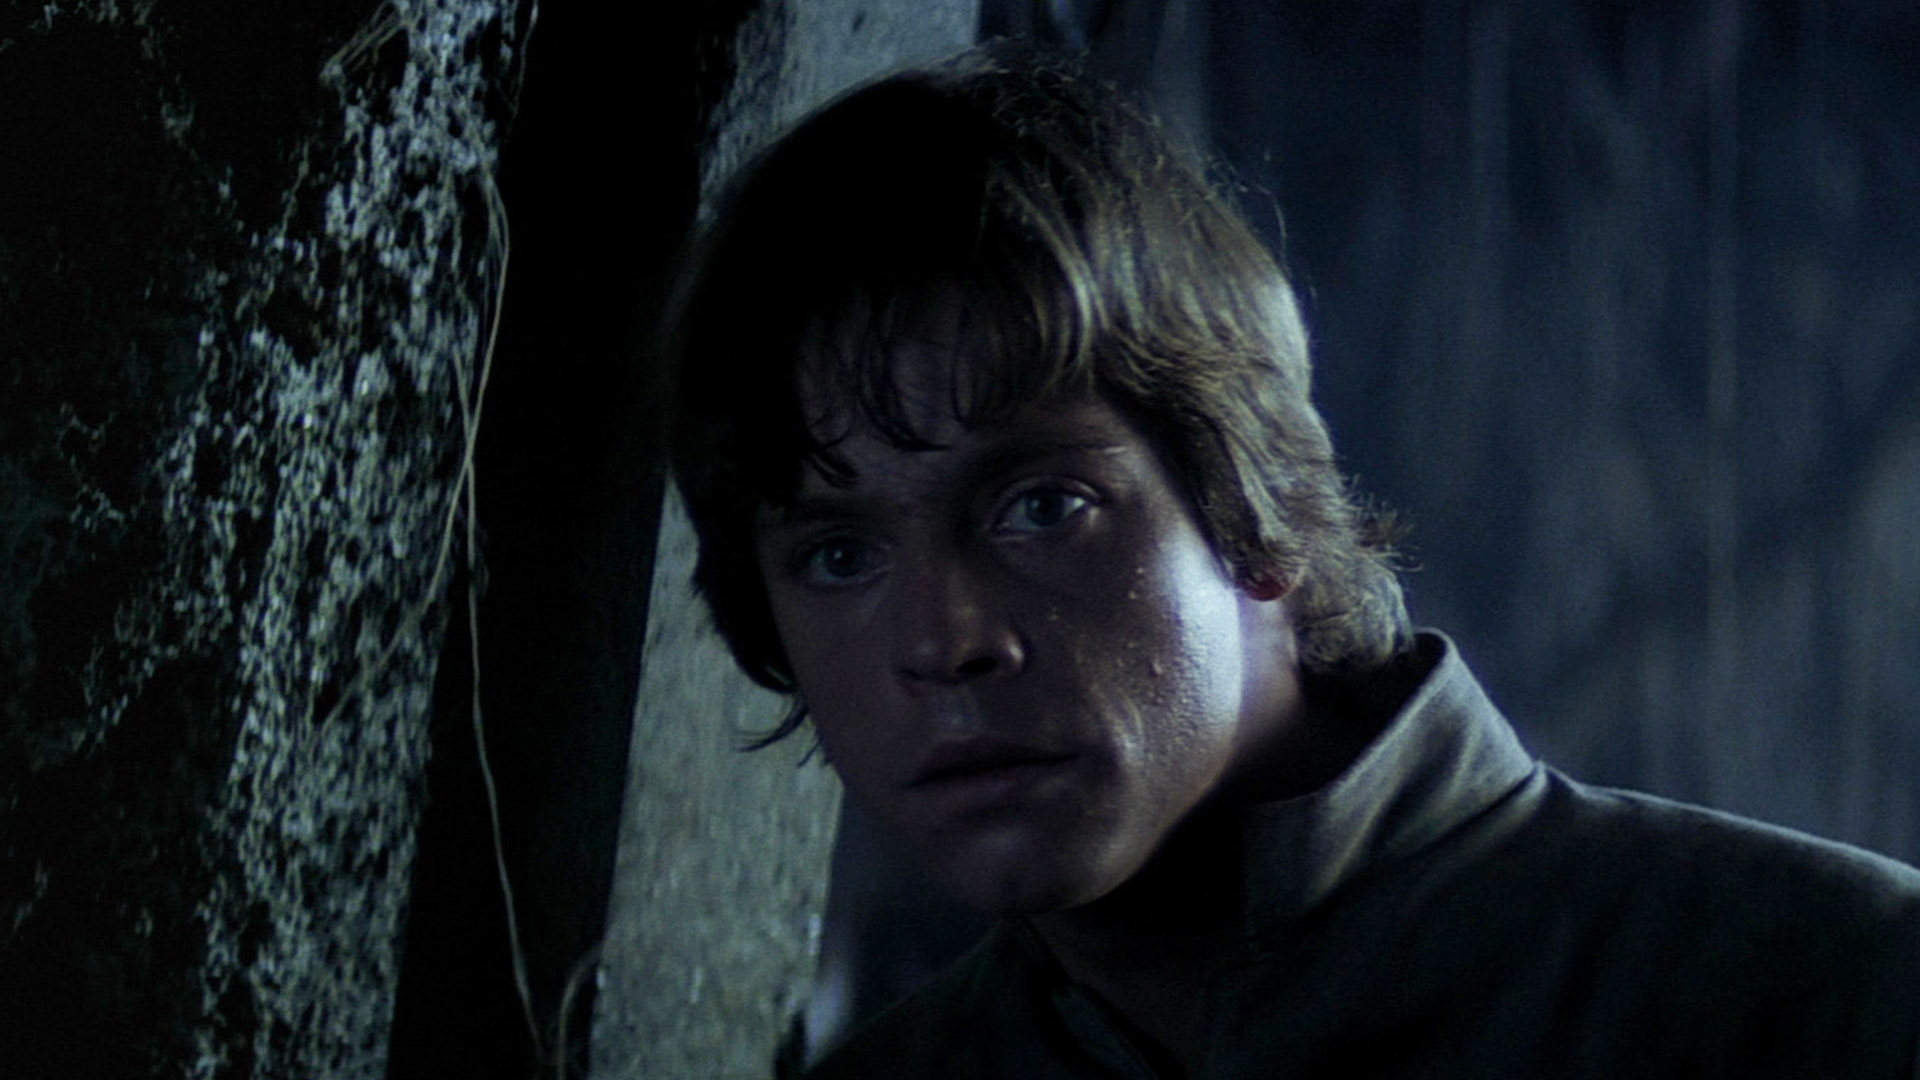 Luke Skywalker in The Empire Strikes Back.